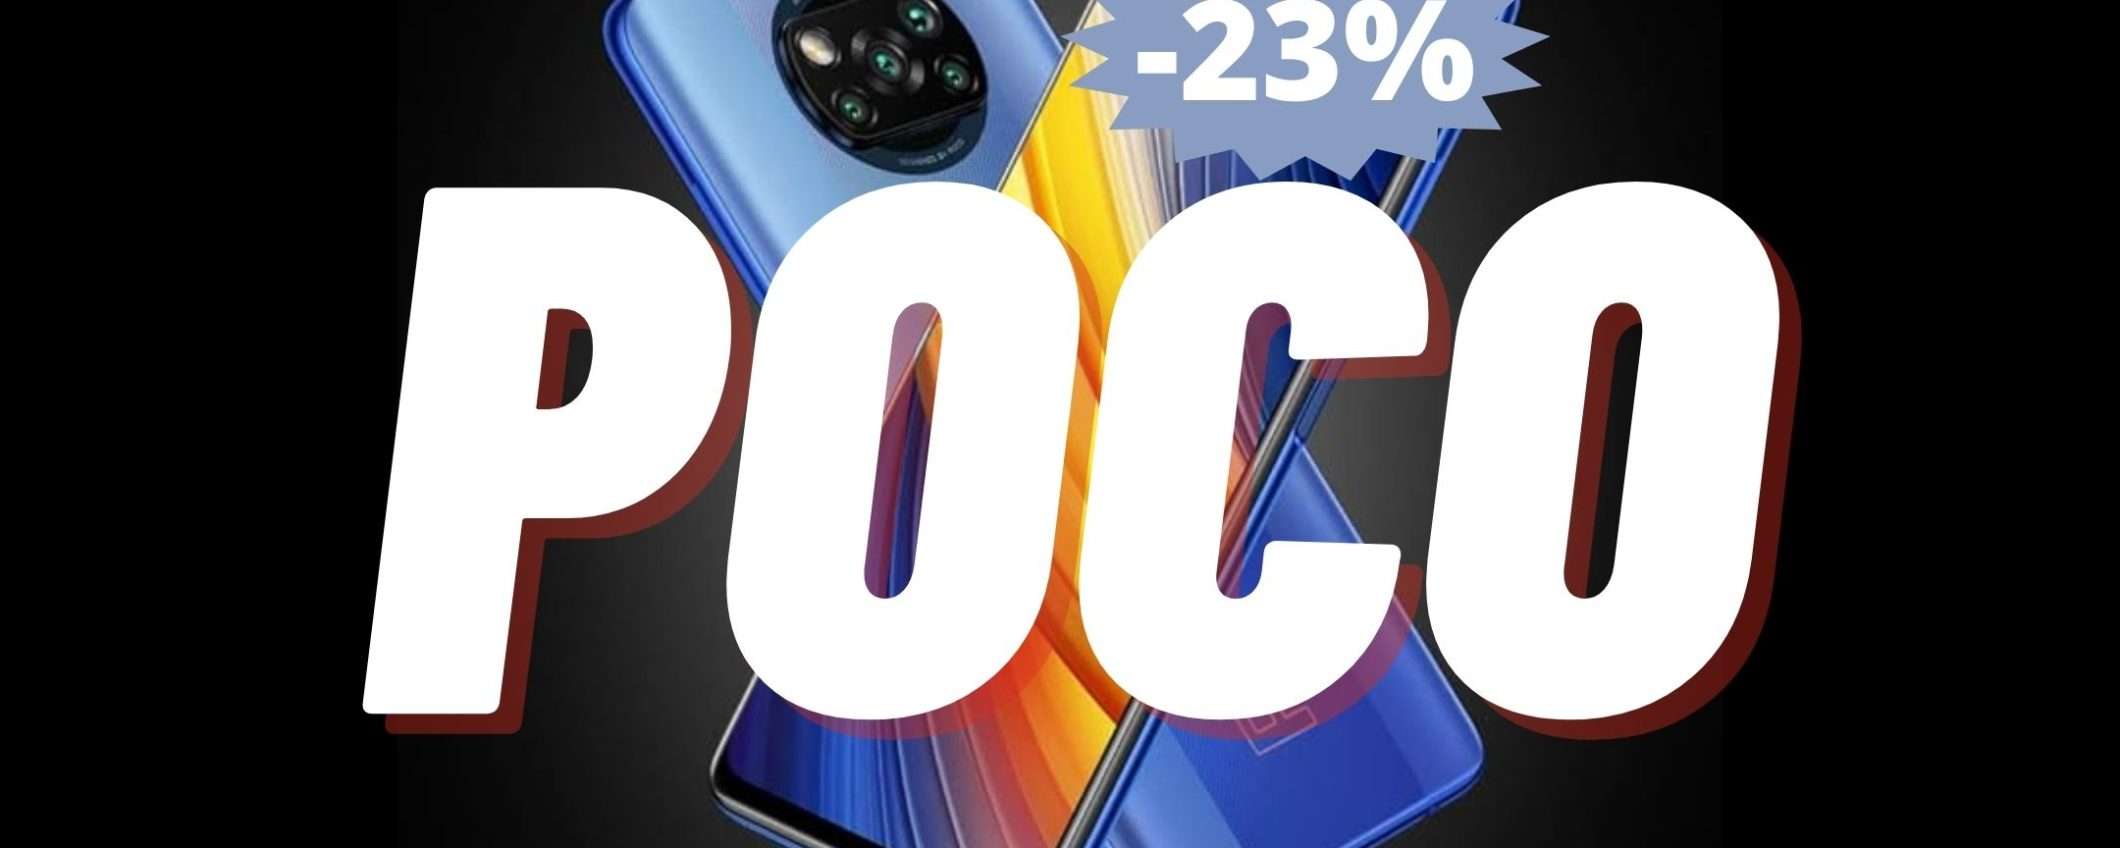 POCO X3 Pro: uno sconto PAZZESCO su Amazon (-23%)